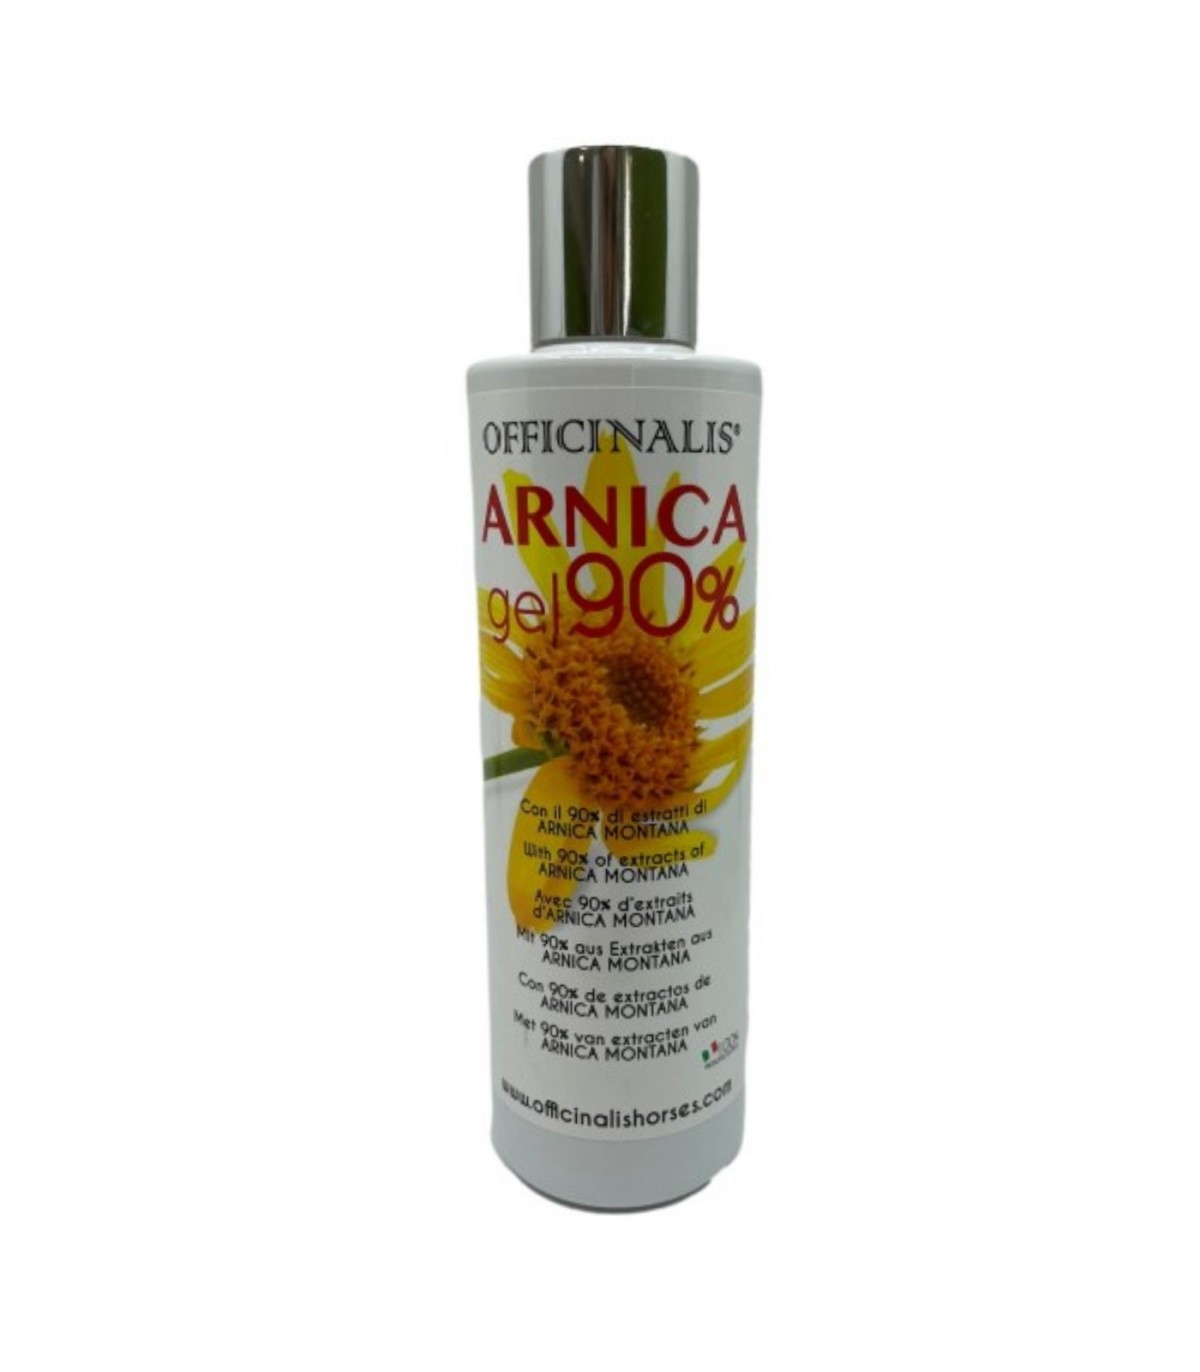 Officinalis Arnica gel 90% 250 ml